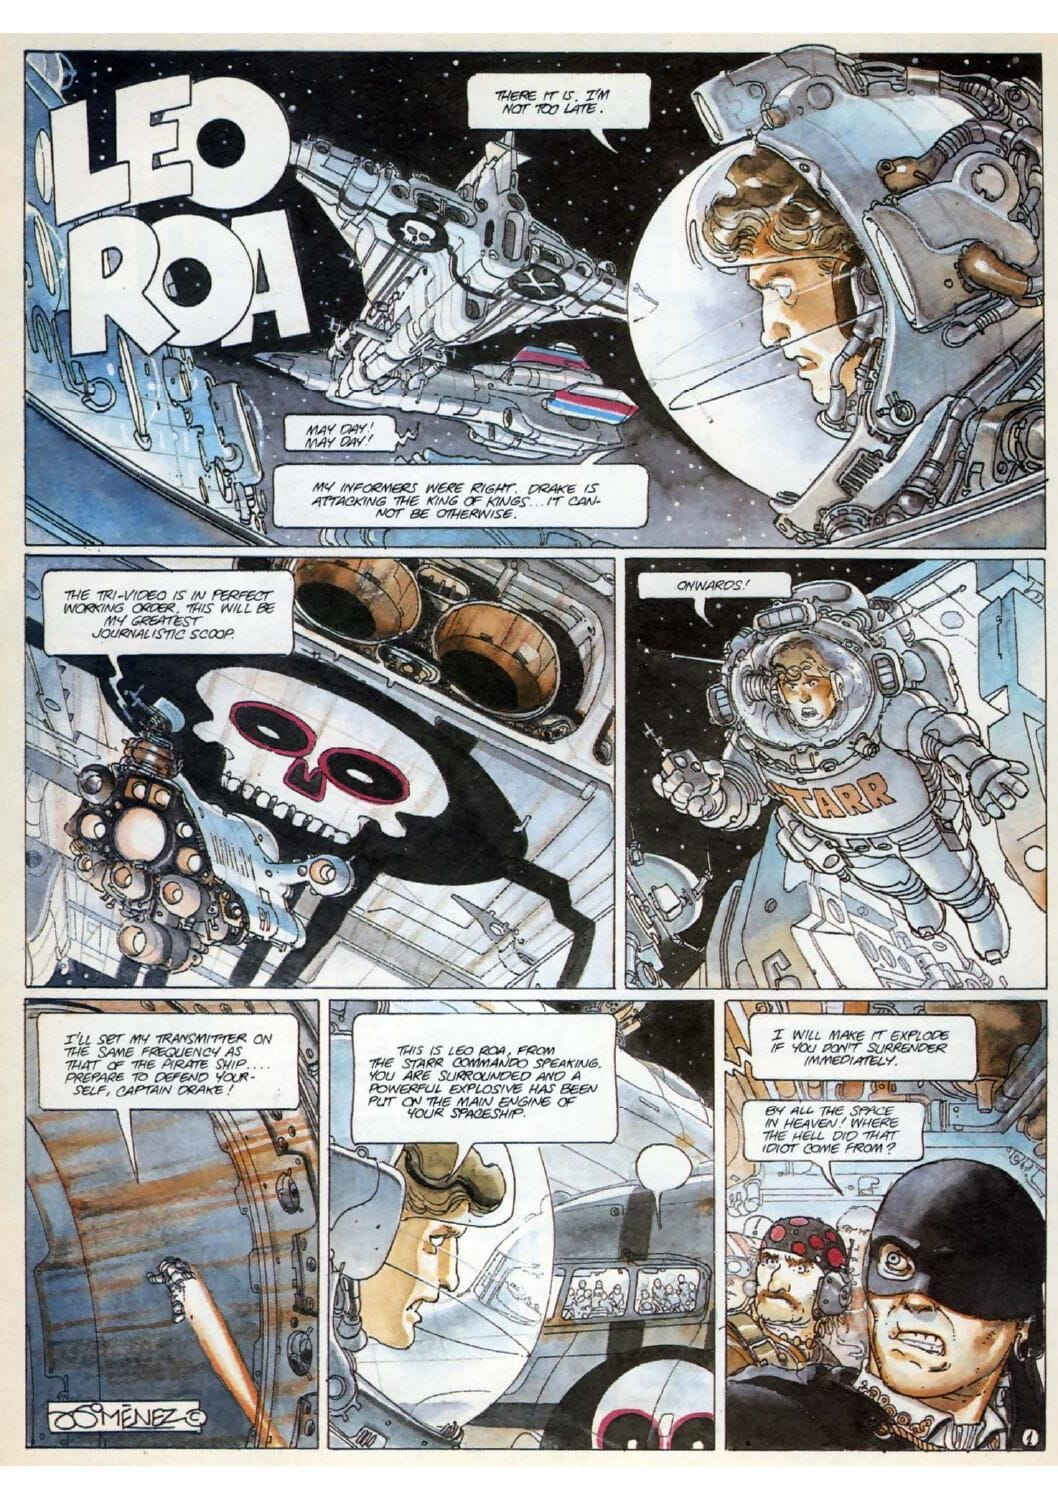 Leo roa page 1